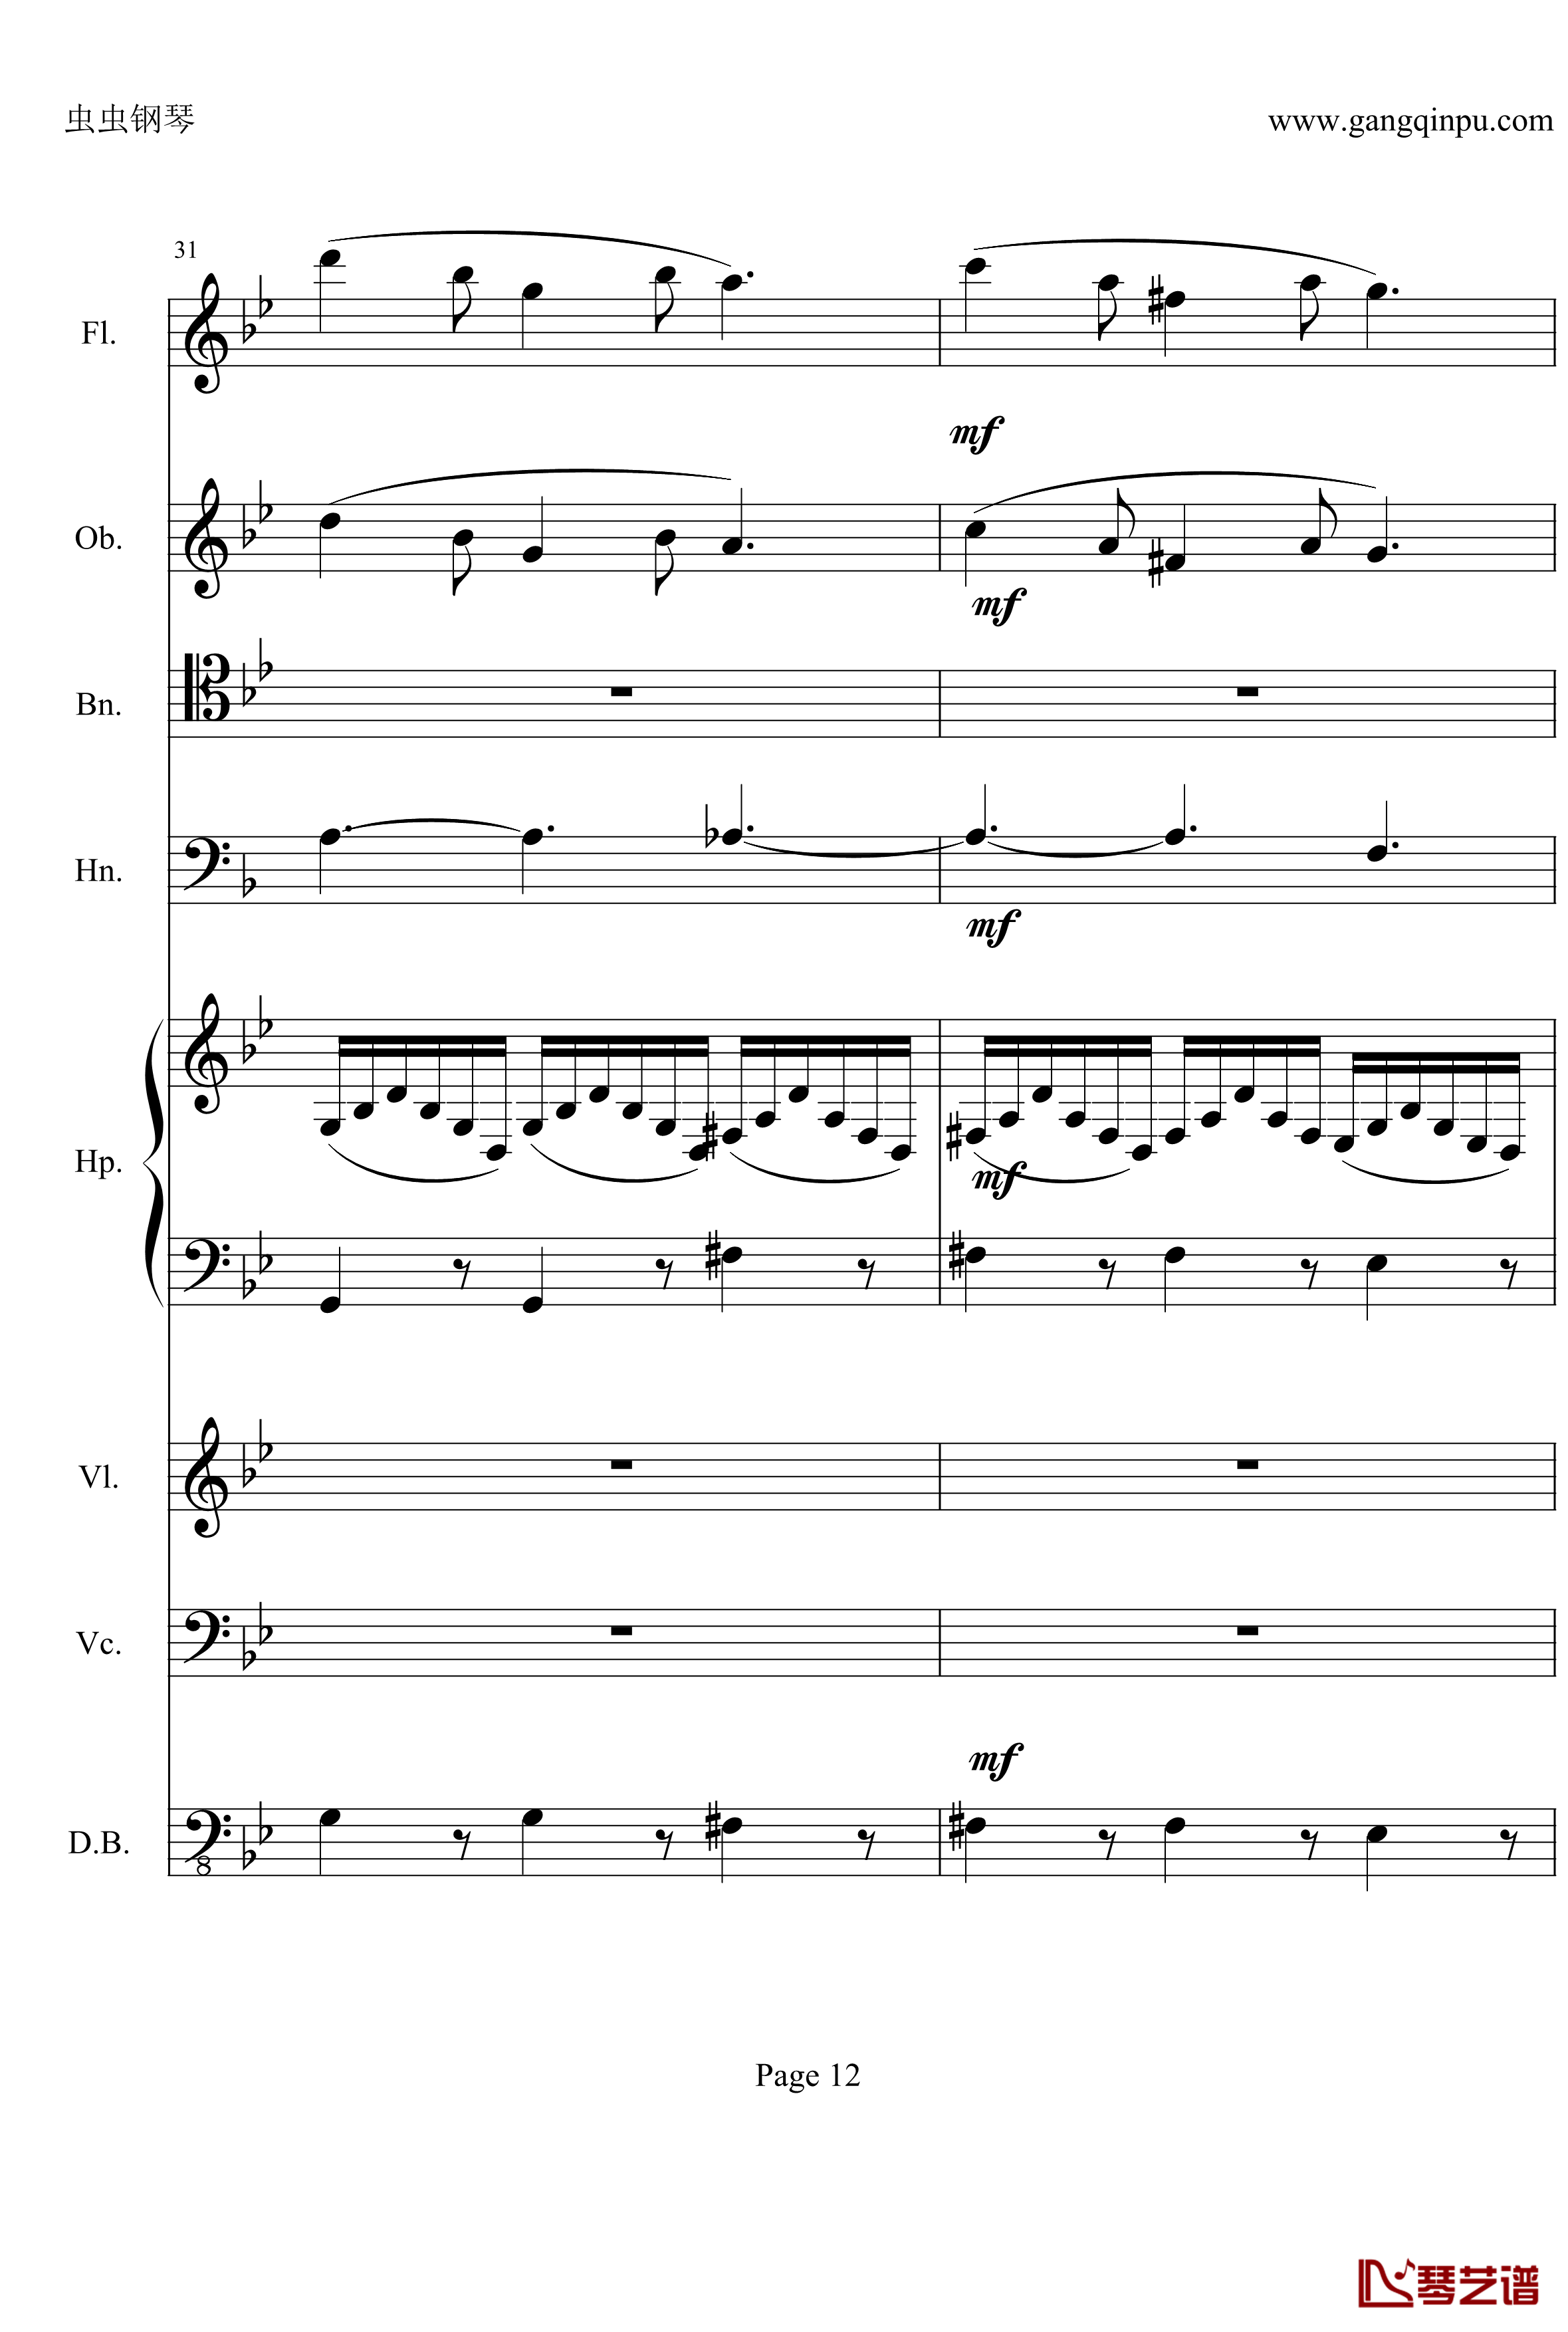 奏鸣曲之交响钢琴谱-第25首-Ⅱ-贝多芬-beethoven12